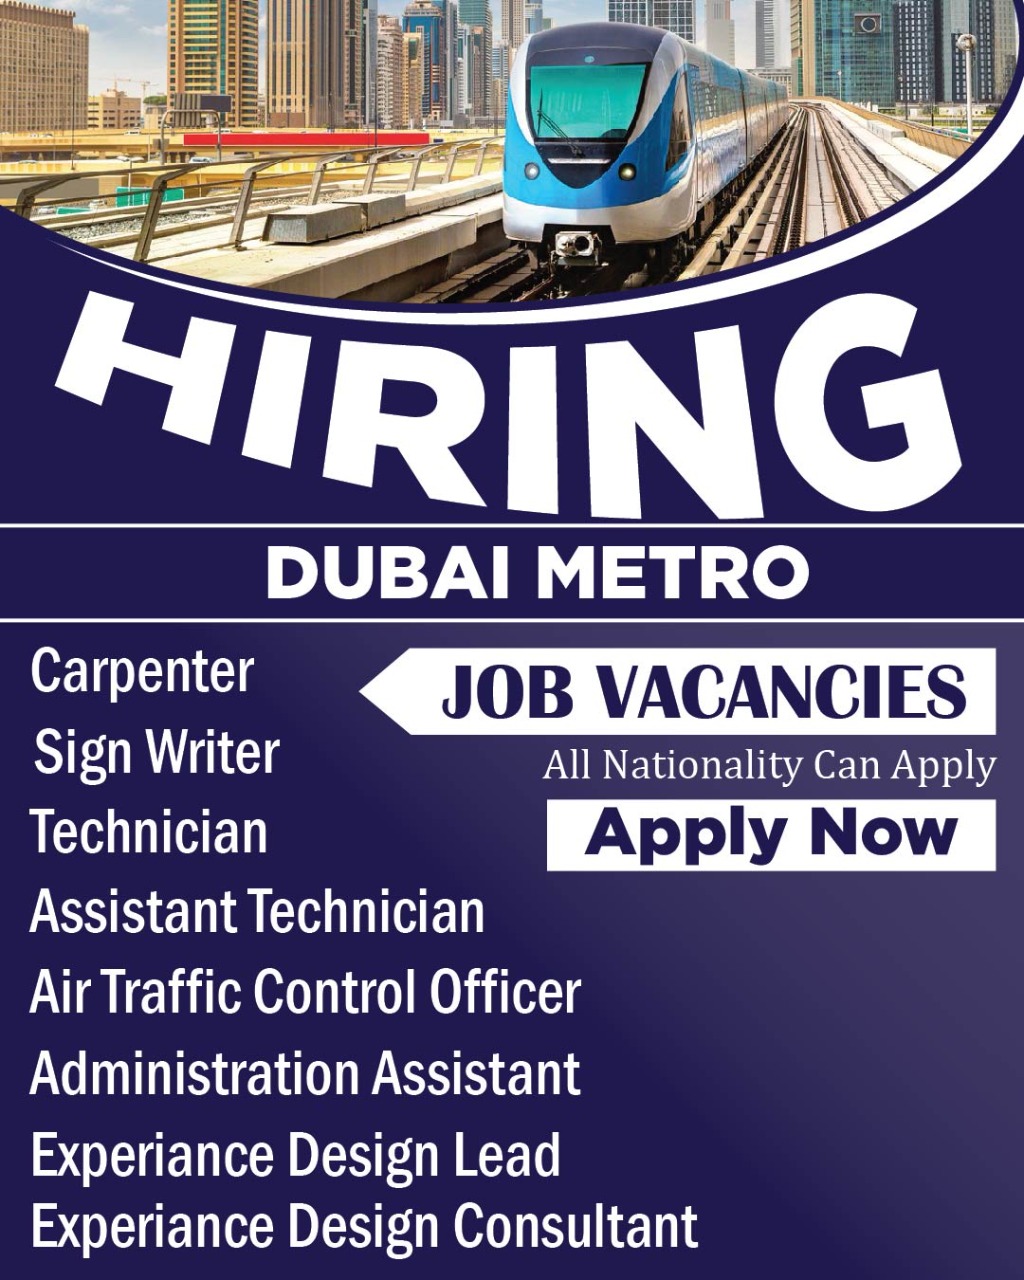 Dubai Metro Jobs and Careers